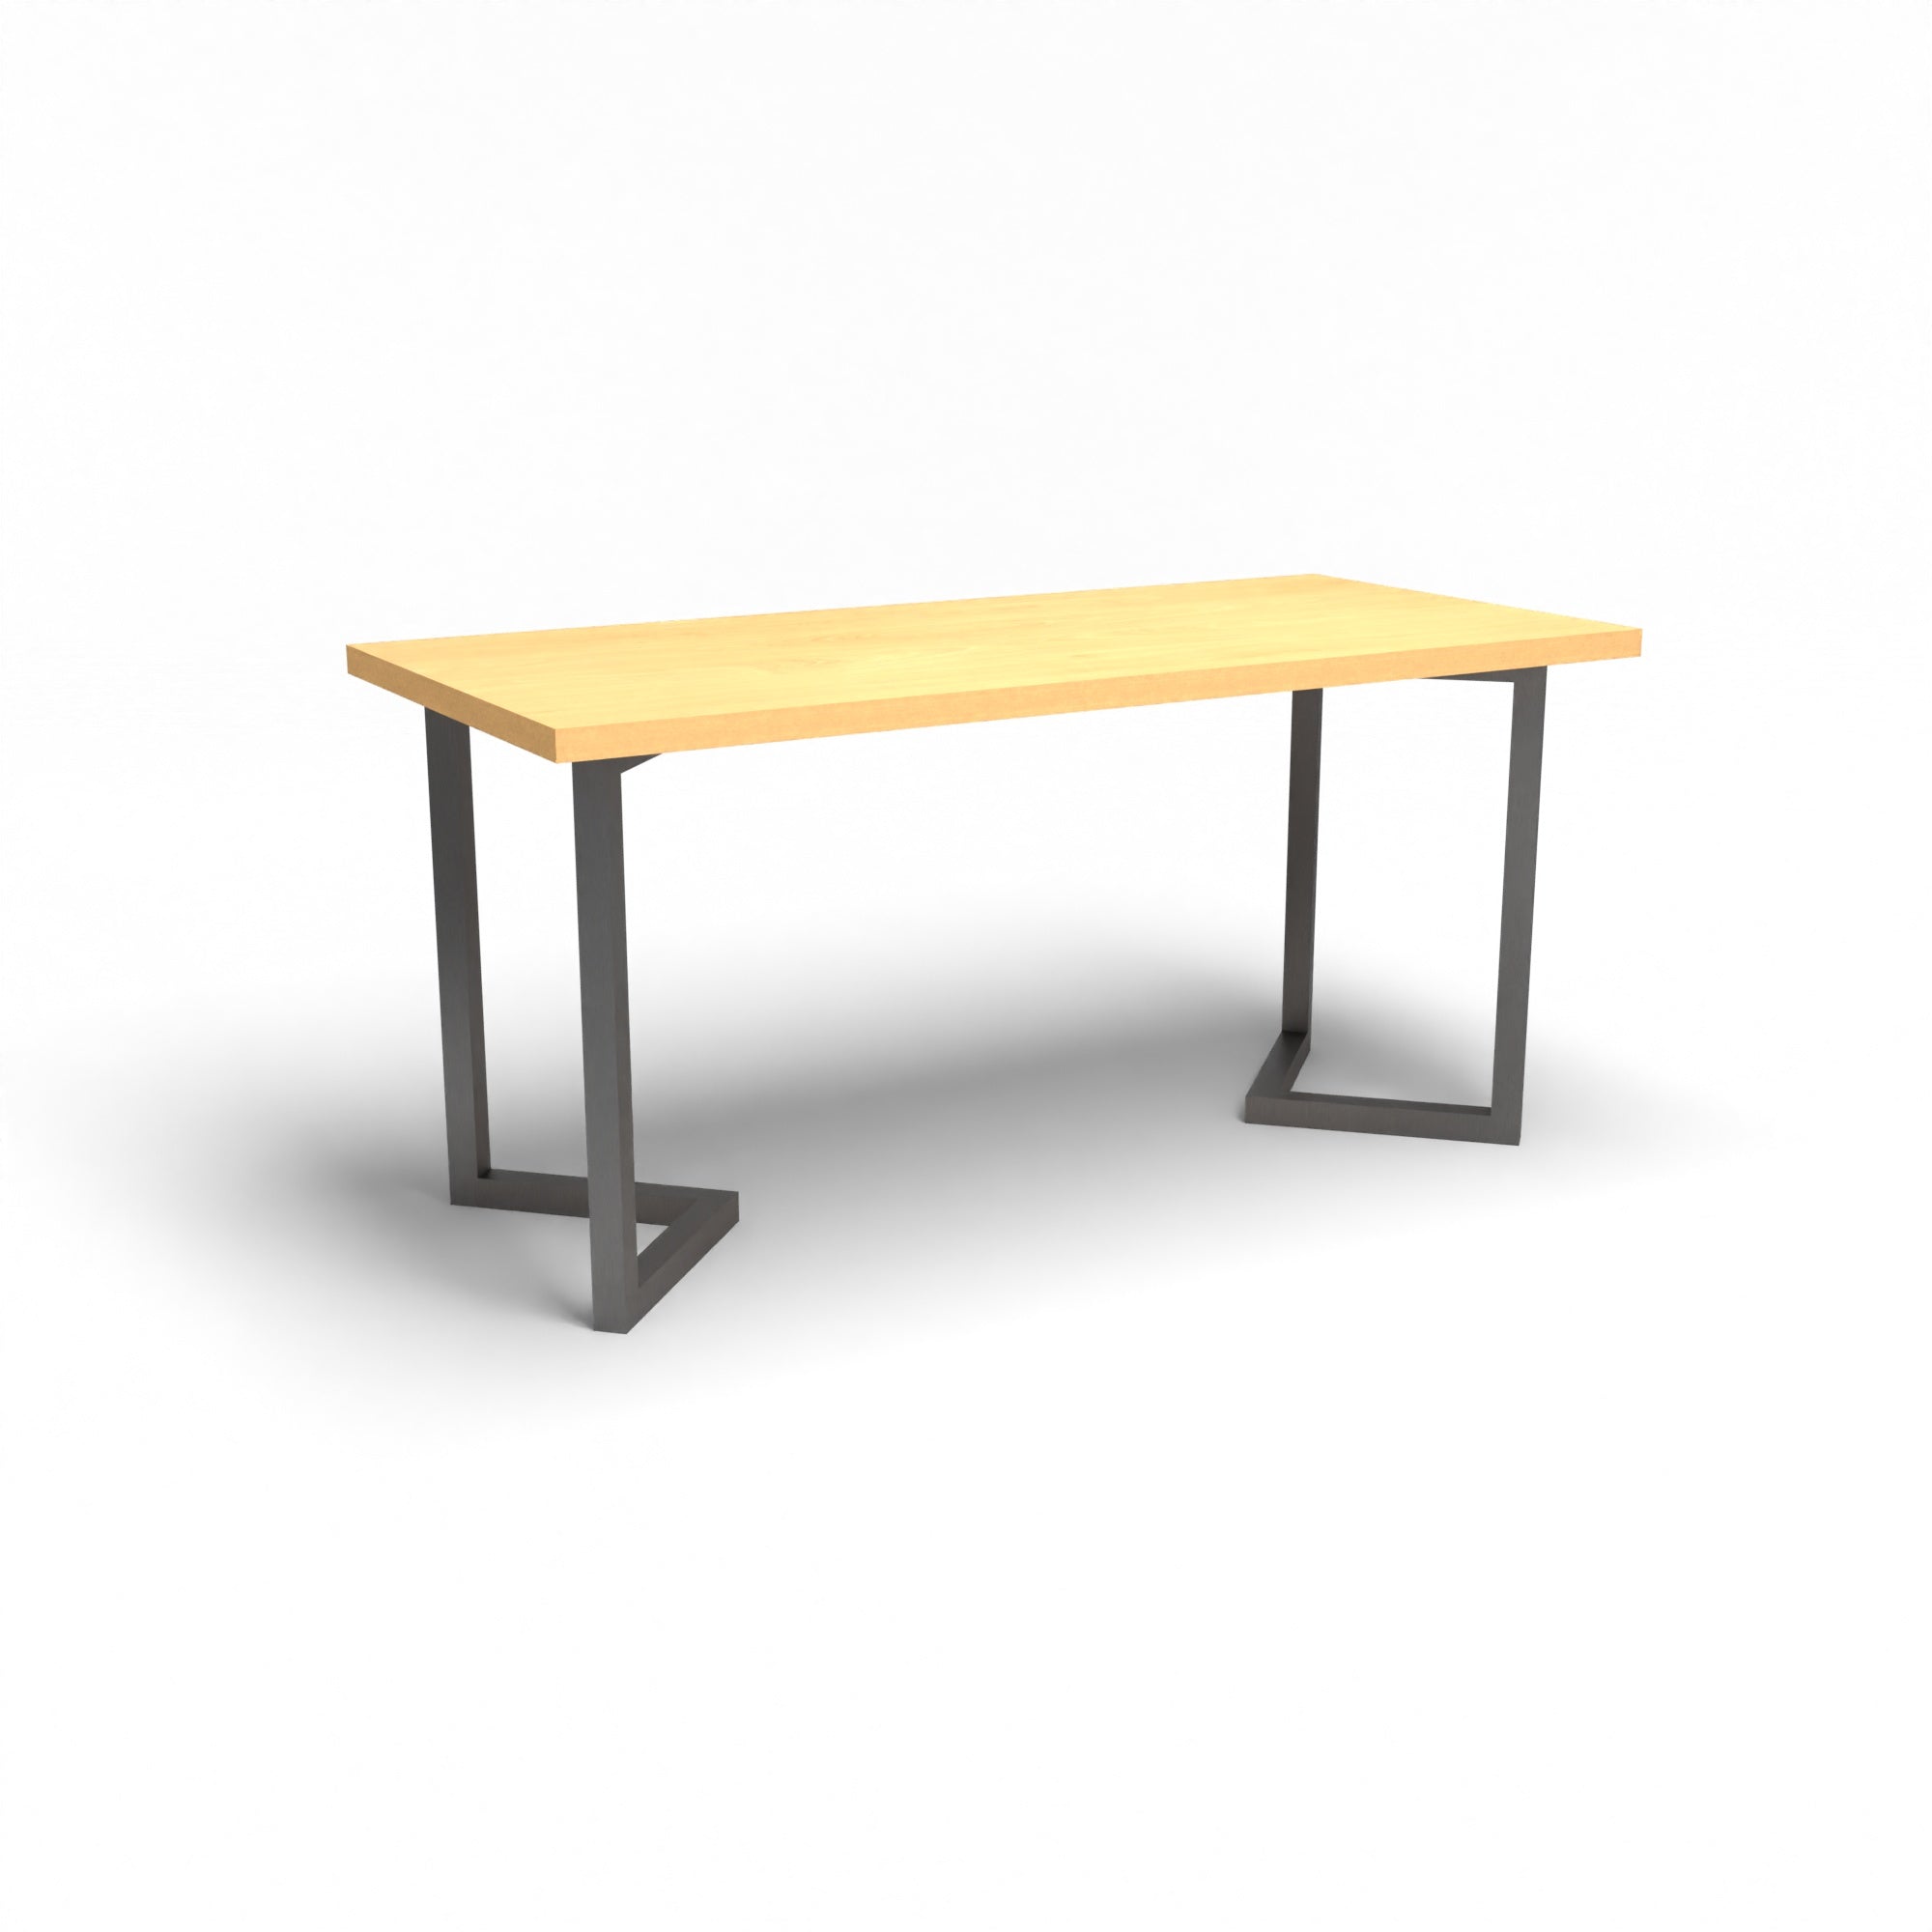 Holztisch - Buche - 2 Meter